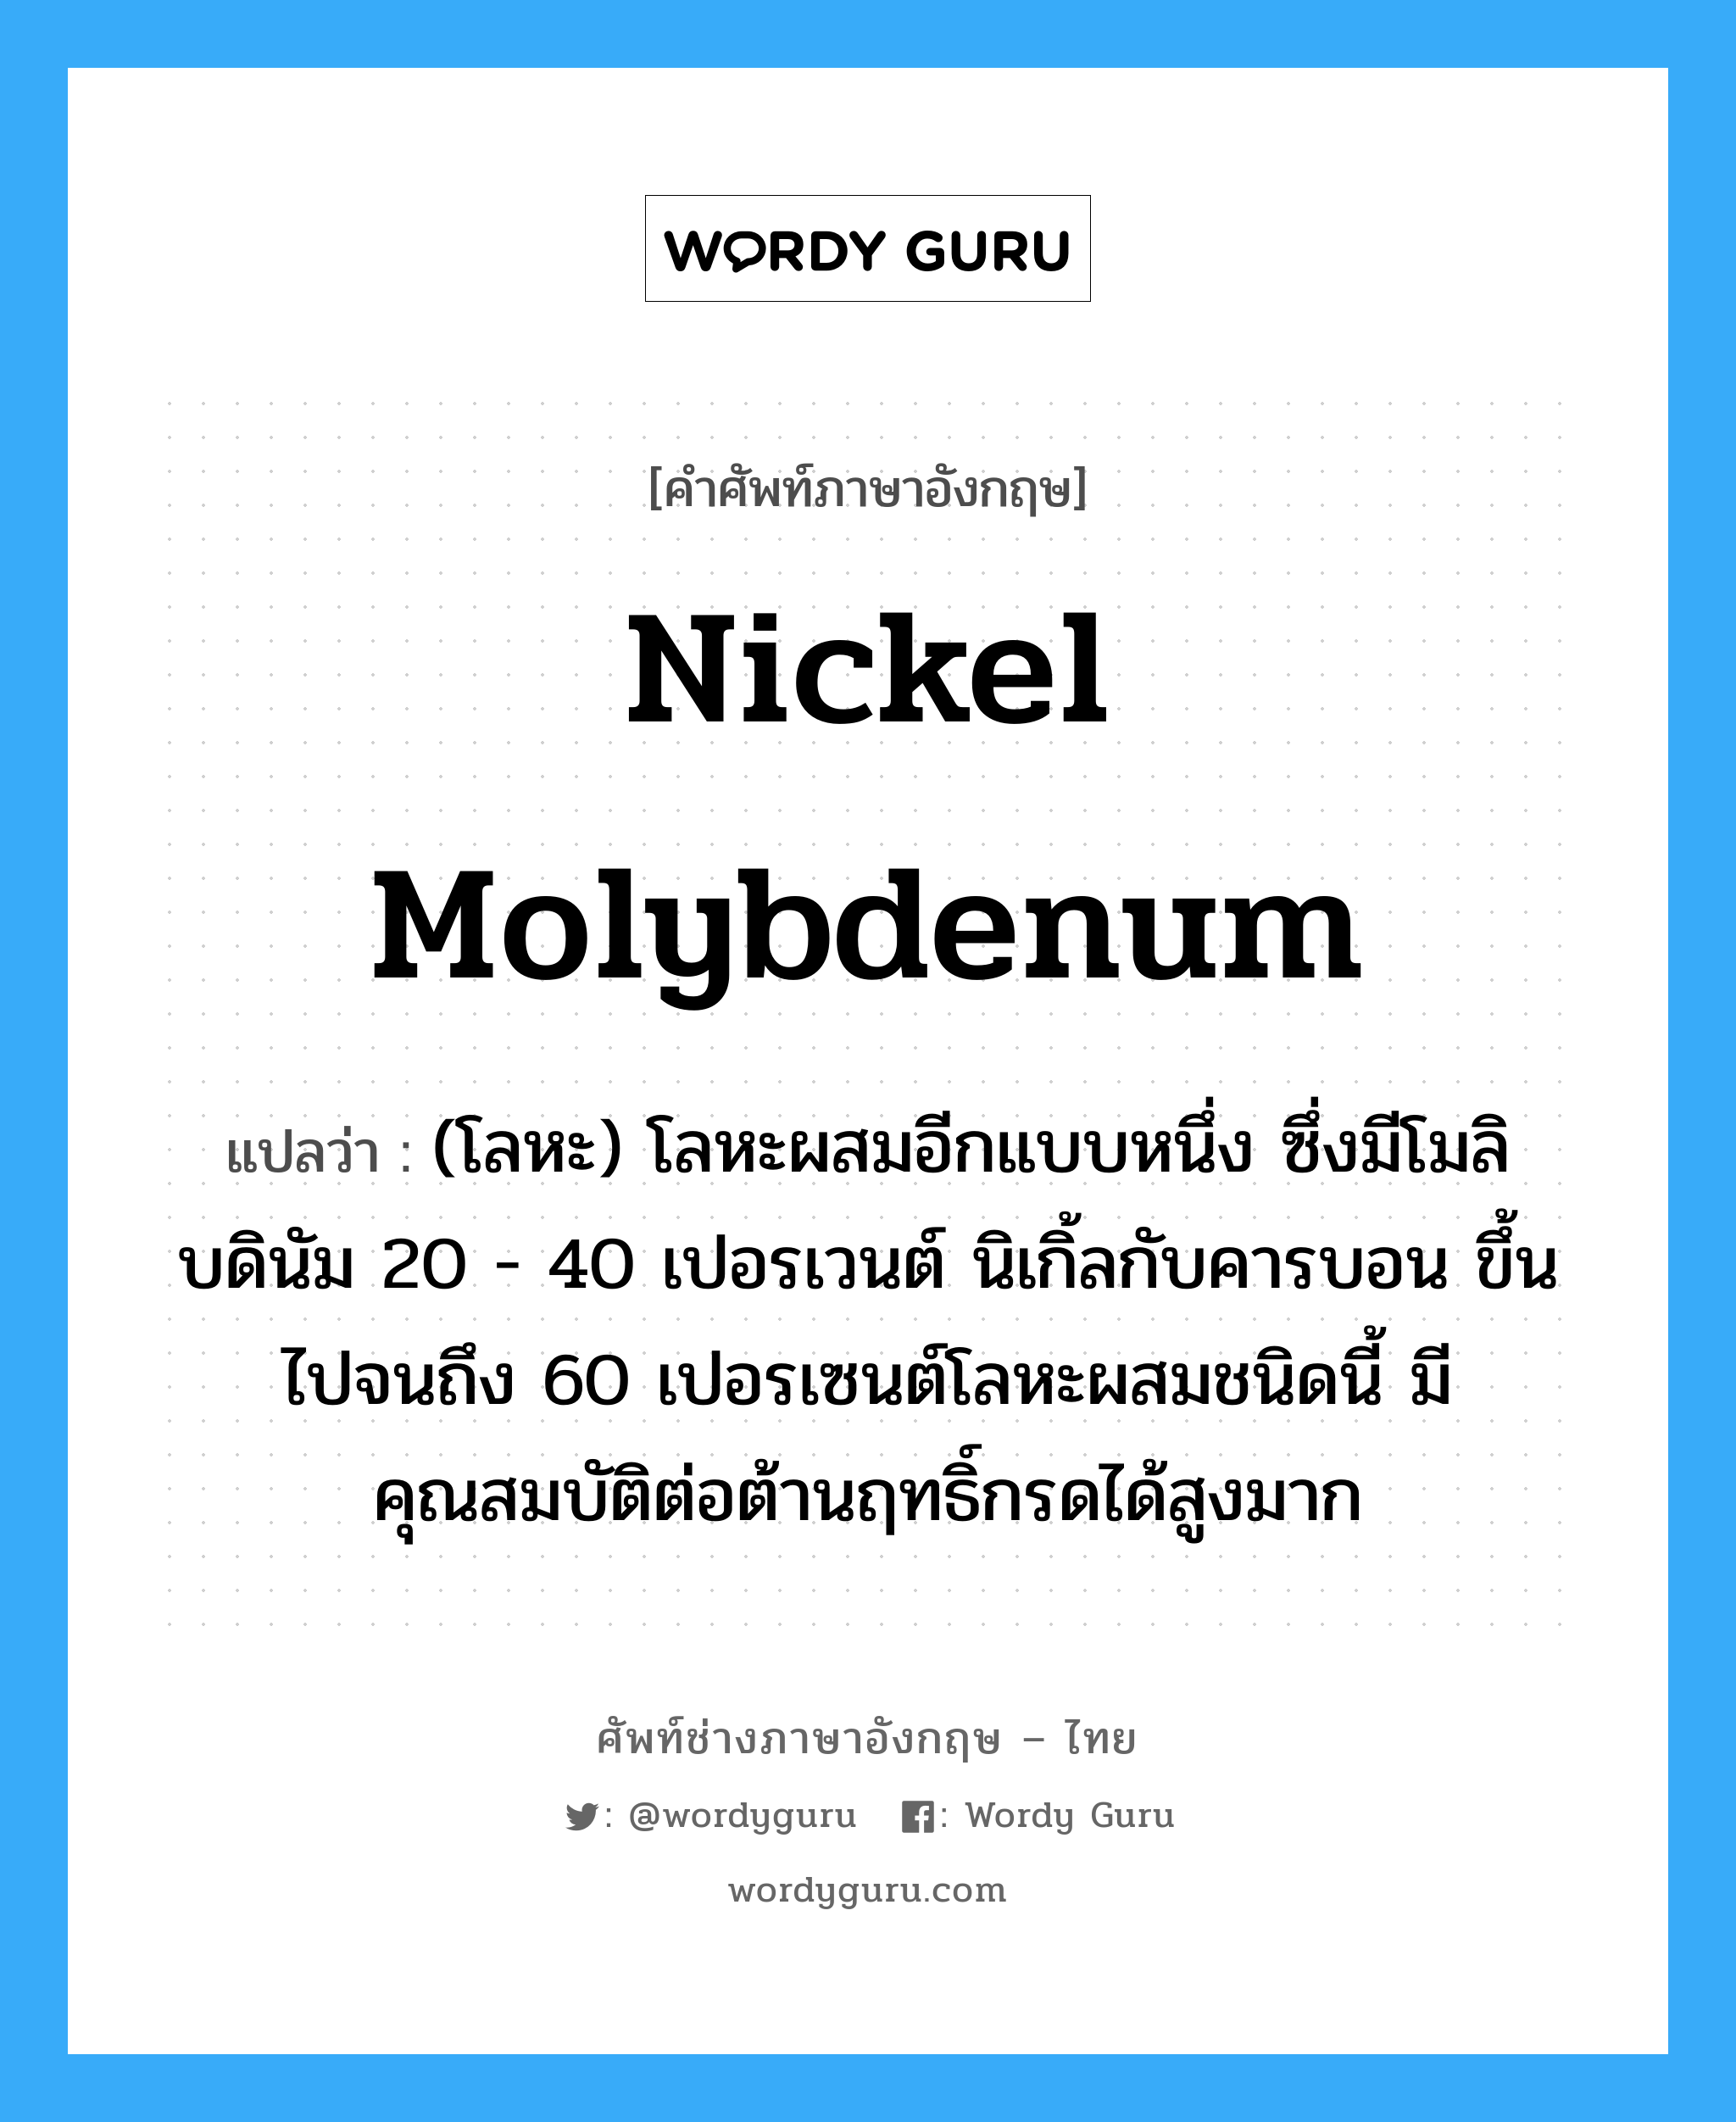 nickel molybdenum แปลว่า?, คำศัพท์ช่างภาษาอังกฤษ - ไทย nickel molybdenum คำศัพท์ภาษาอังกฤษ nickel molybdenum แปลว่า (โลหะ) โลหะผสมอีกแบบหนึ่ง ซึ่งมีโมลิบดินัม 20 - 40 เปอรเวนต์ นิเกิ้ลกับคารบอน ขึ้นไปจนถึง 60 เปอรเซนต์โลหะผสมชนิดนี้ มีคุณสมบัติต่อต้านฤทธิ์กรดได้สูงมาก